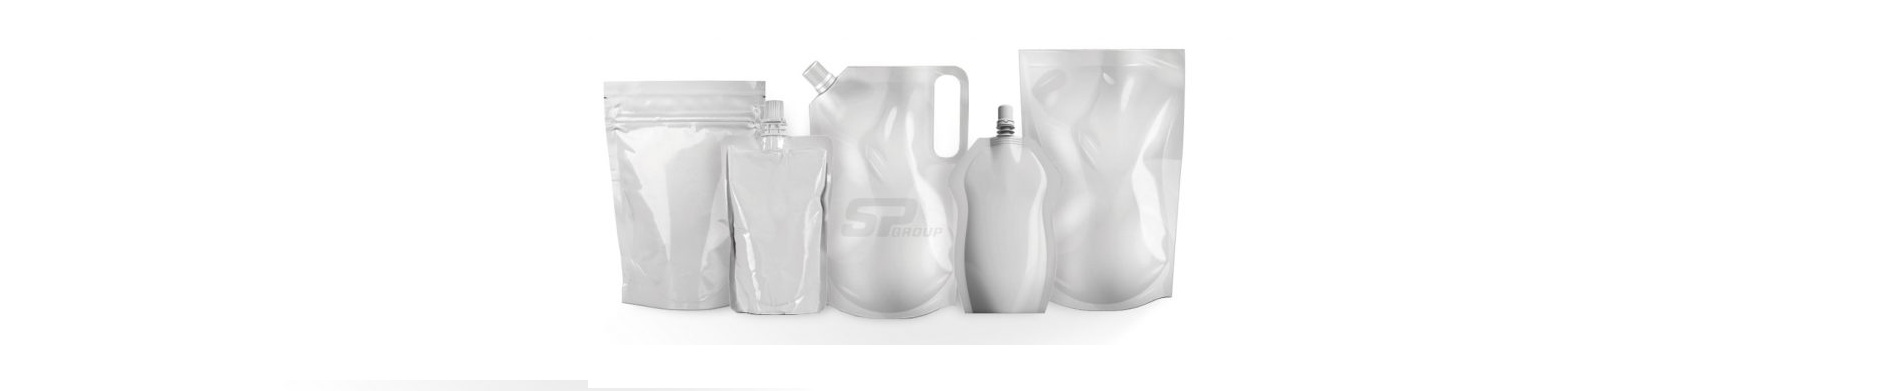 Trendy w plastikowych opakowaniach na płyny: elastyczne, praktyczne i spersonalizowane